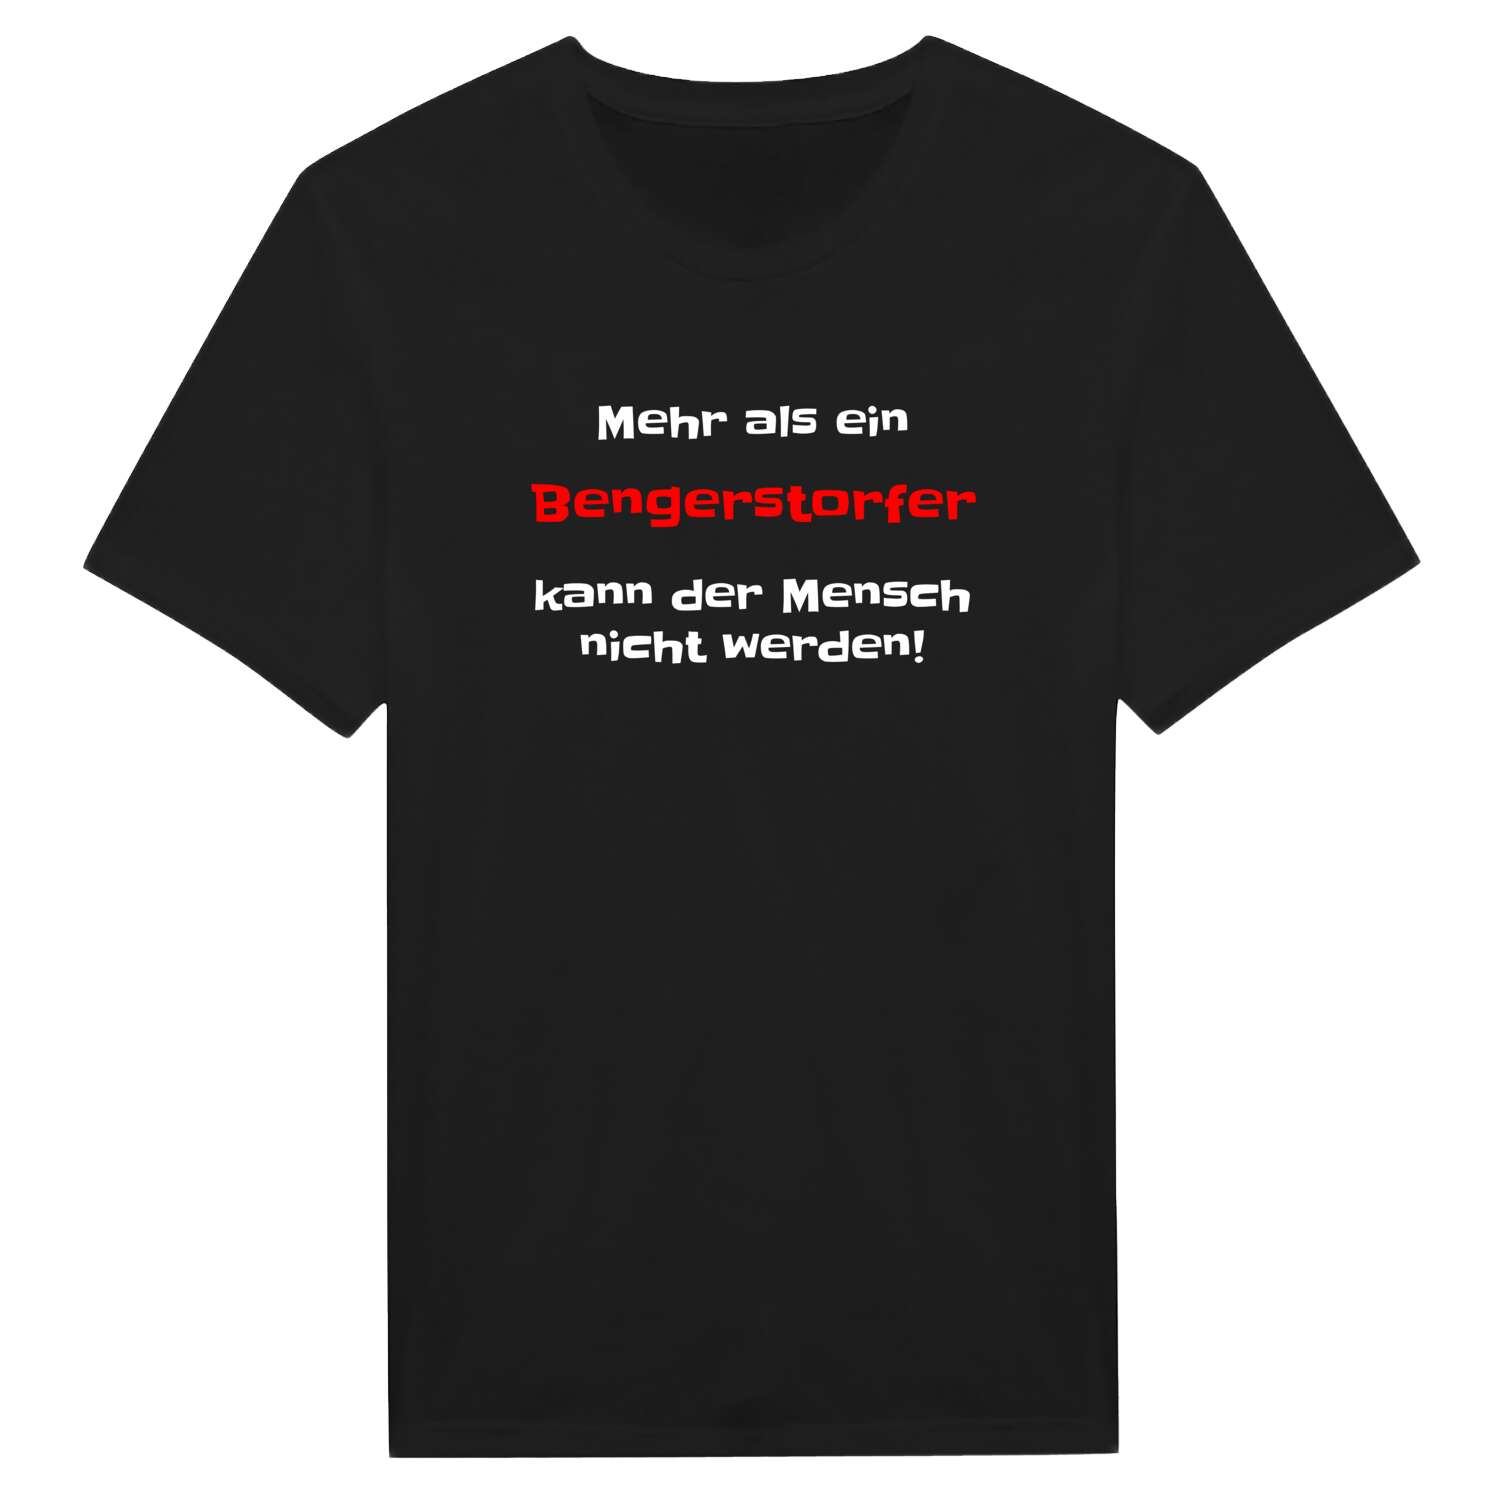 Bengerstorf T-Shirt »Mehr als ein«